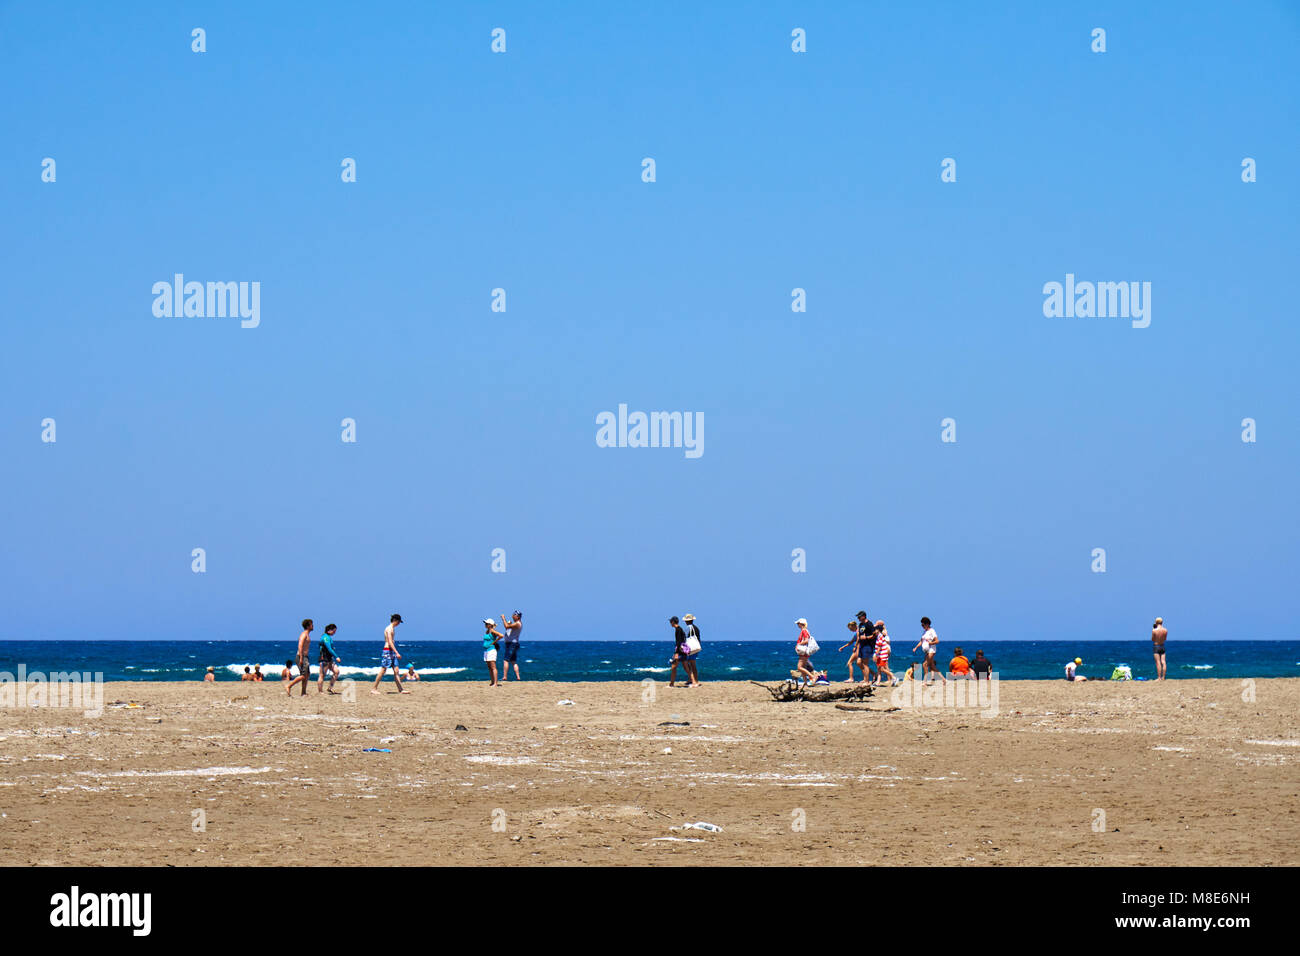 Trajes de baño arena mar fotografías e imágenes de alta resolución - Alamy